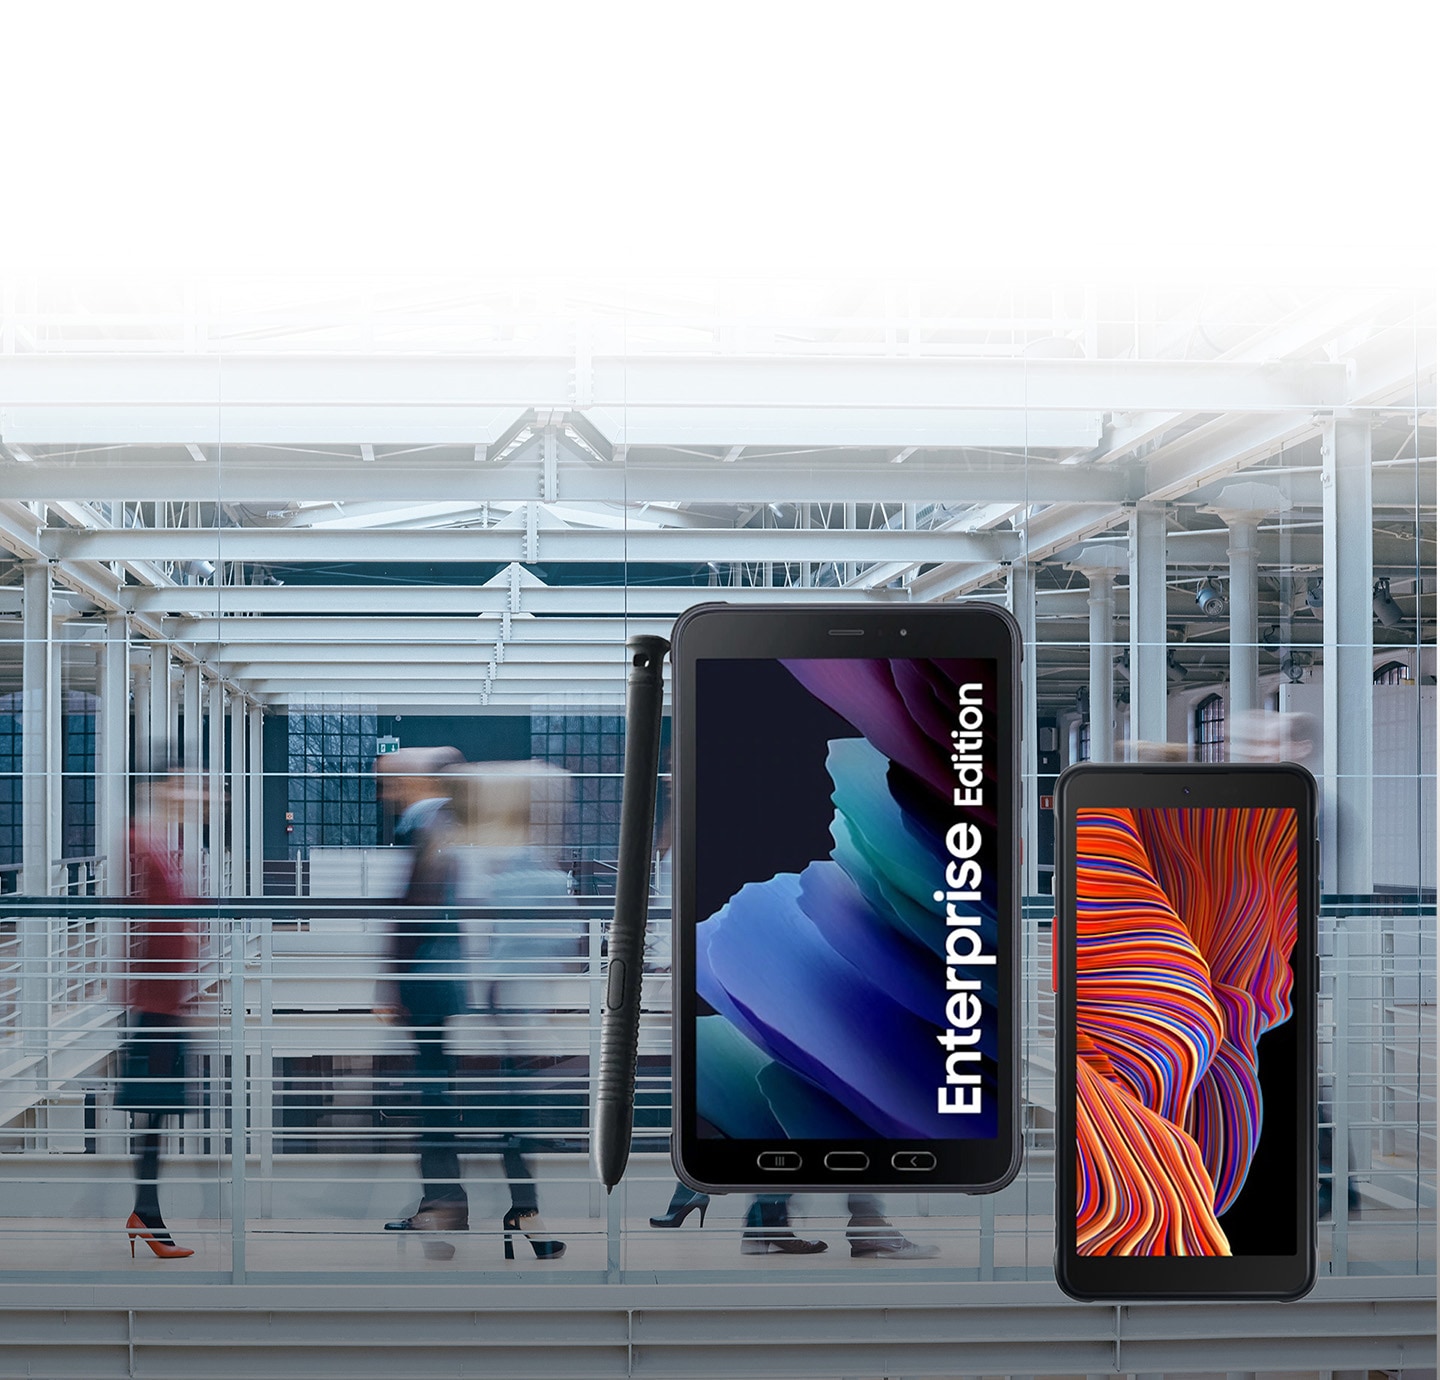 Tìm hiểu các sản phẩm thiết bị, giải pháp Galaxy Enterprise Edition dành cho doanh nghiệp đáp ứng mọi nhu cầu cụ thể của bạn tại trang Samsung Business Việt Nam